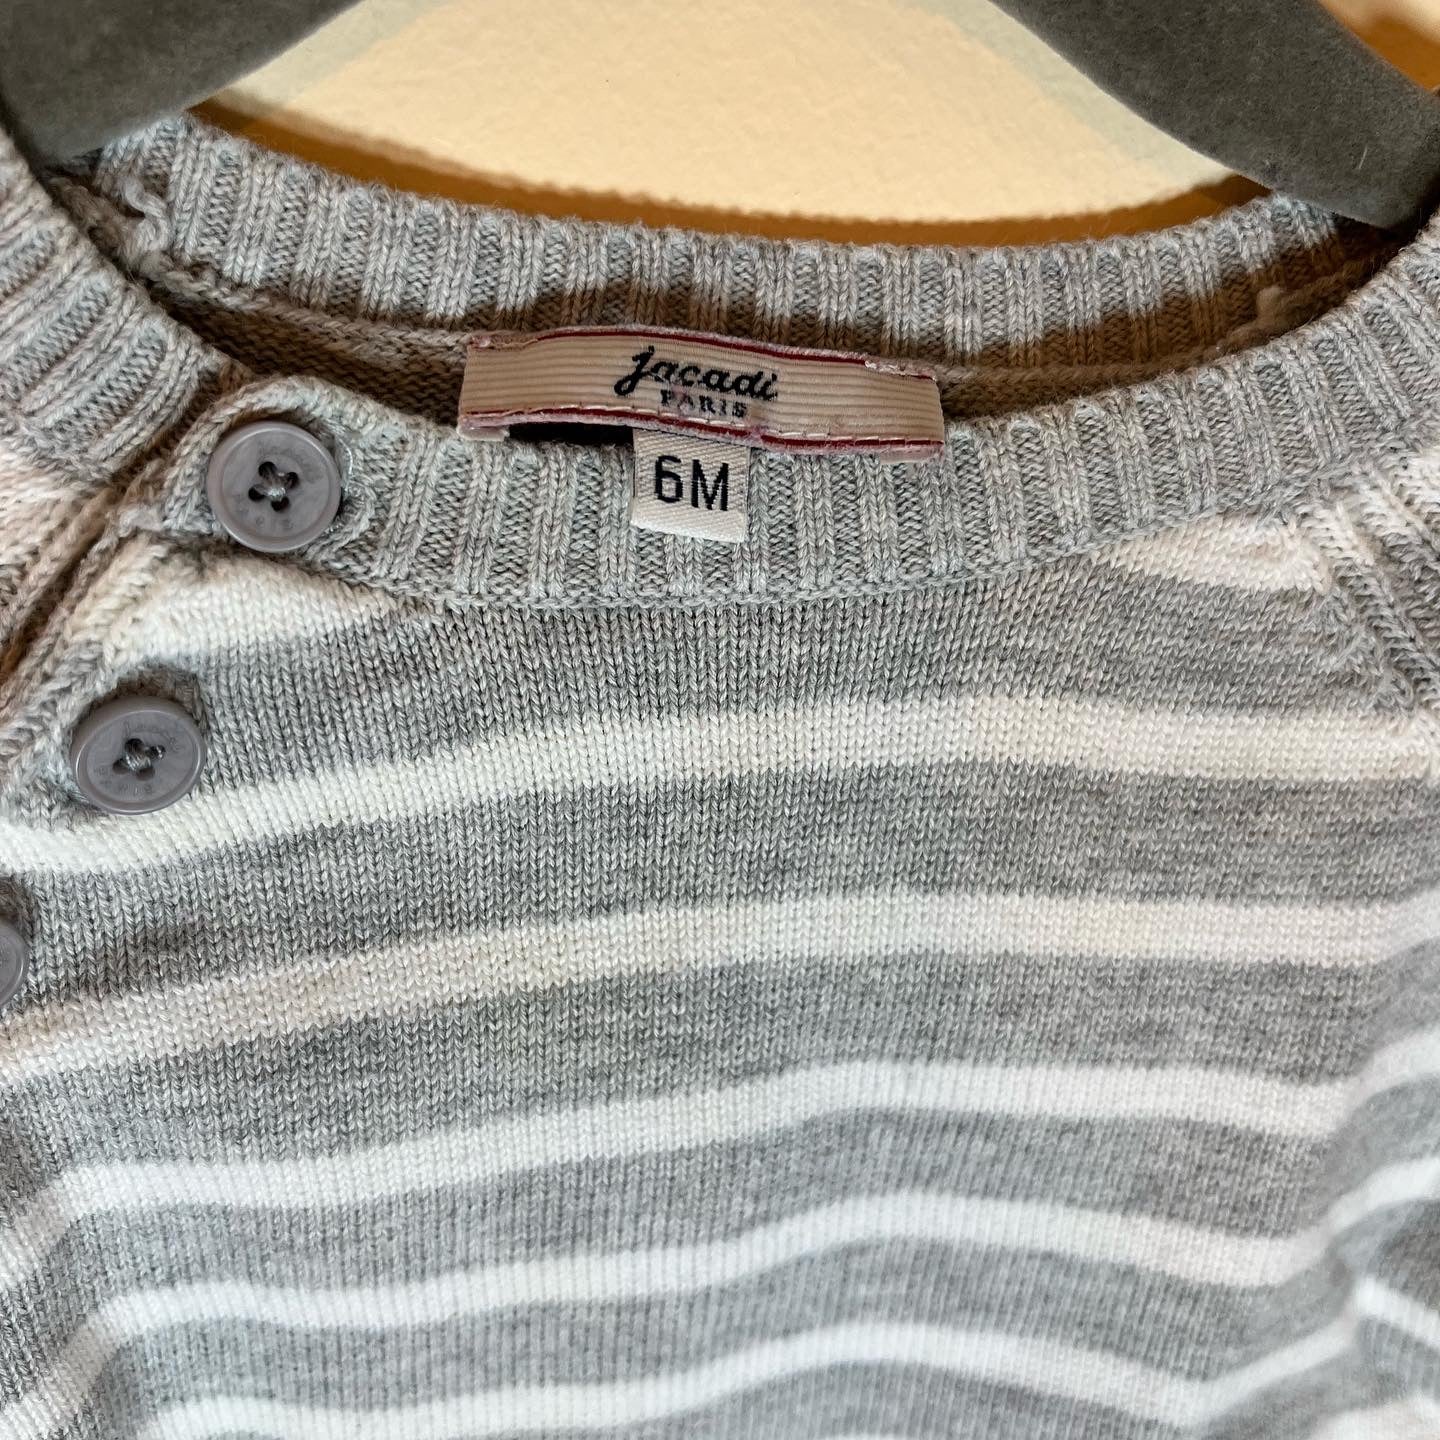 Jacadi Striped Knit Sweater (6M)